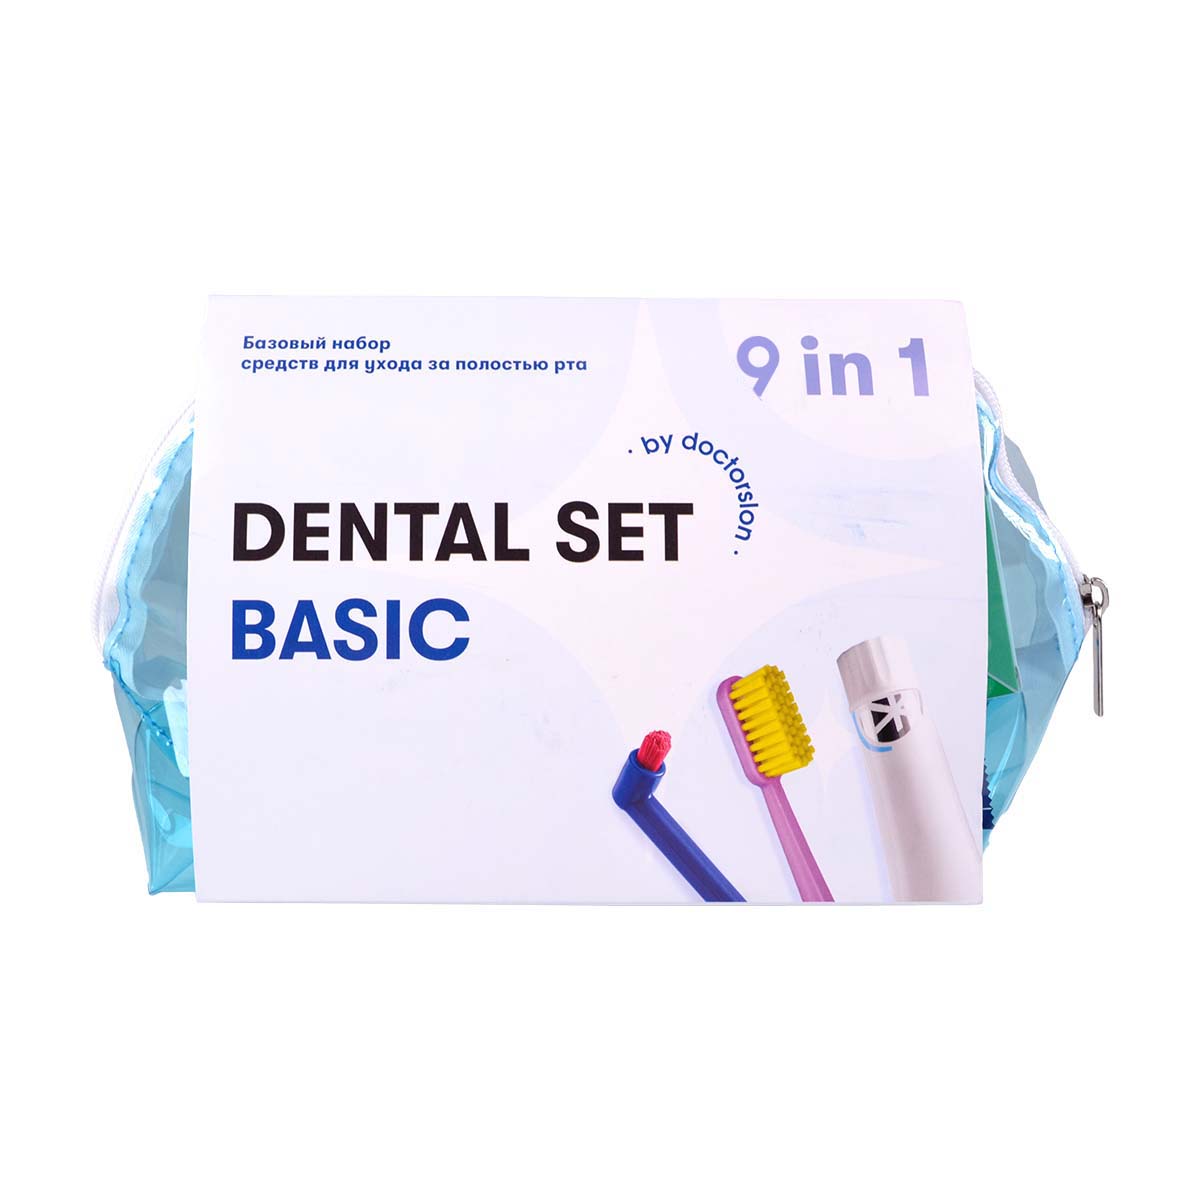 Готовый набор для гигиены Dental Box Dental Set basic готовый набор для гигиены dental box ортодонтический набор 1